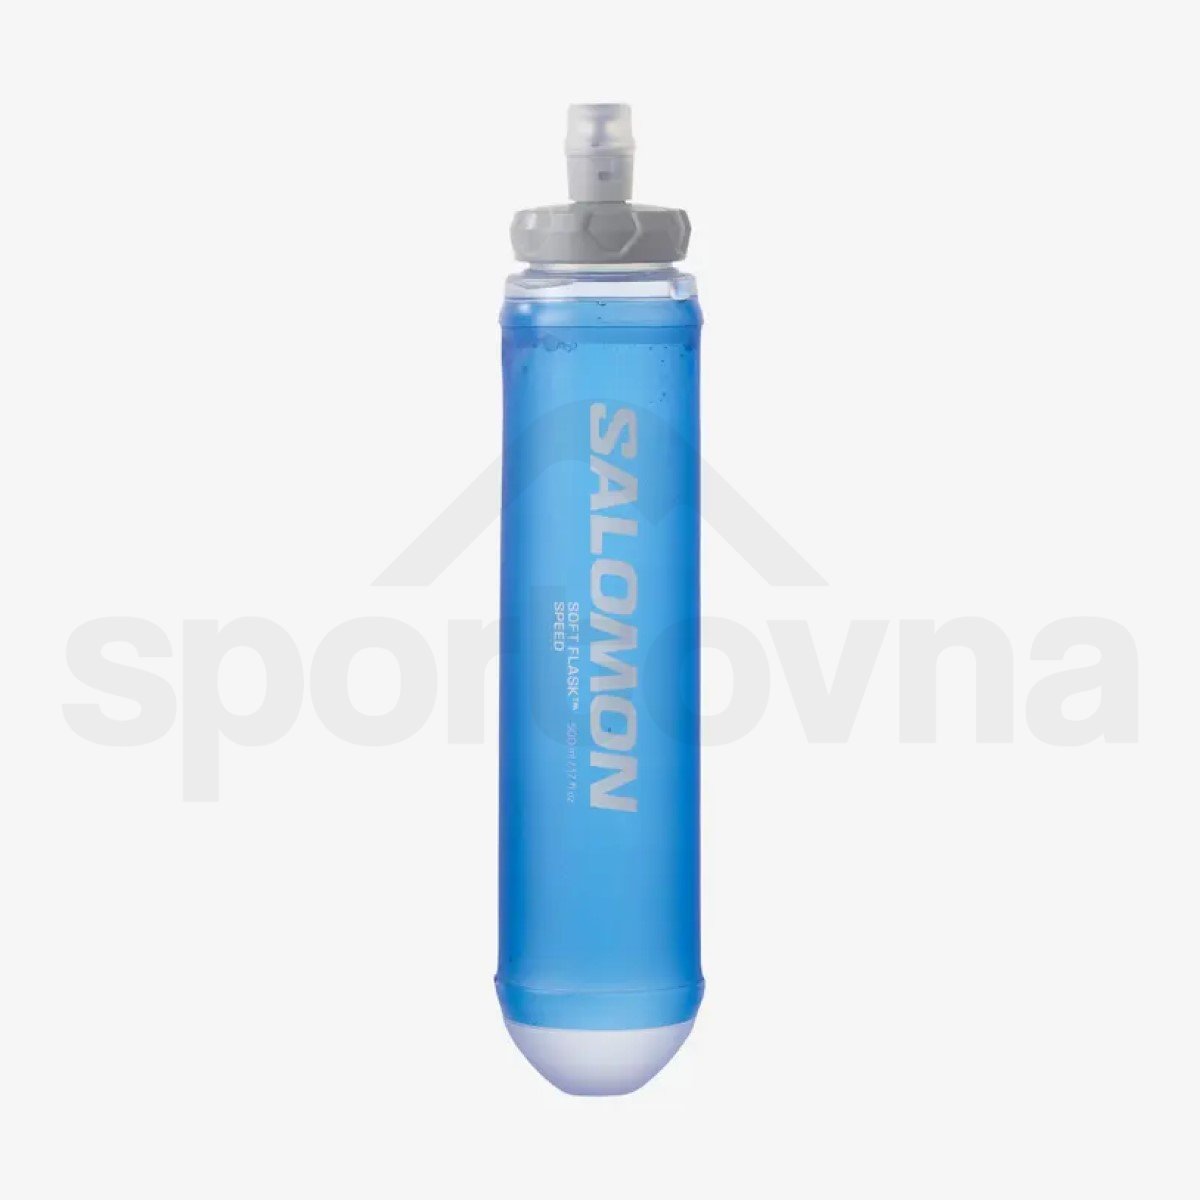 Batoh Salomon Sense Pro 10 with flasks - červená